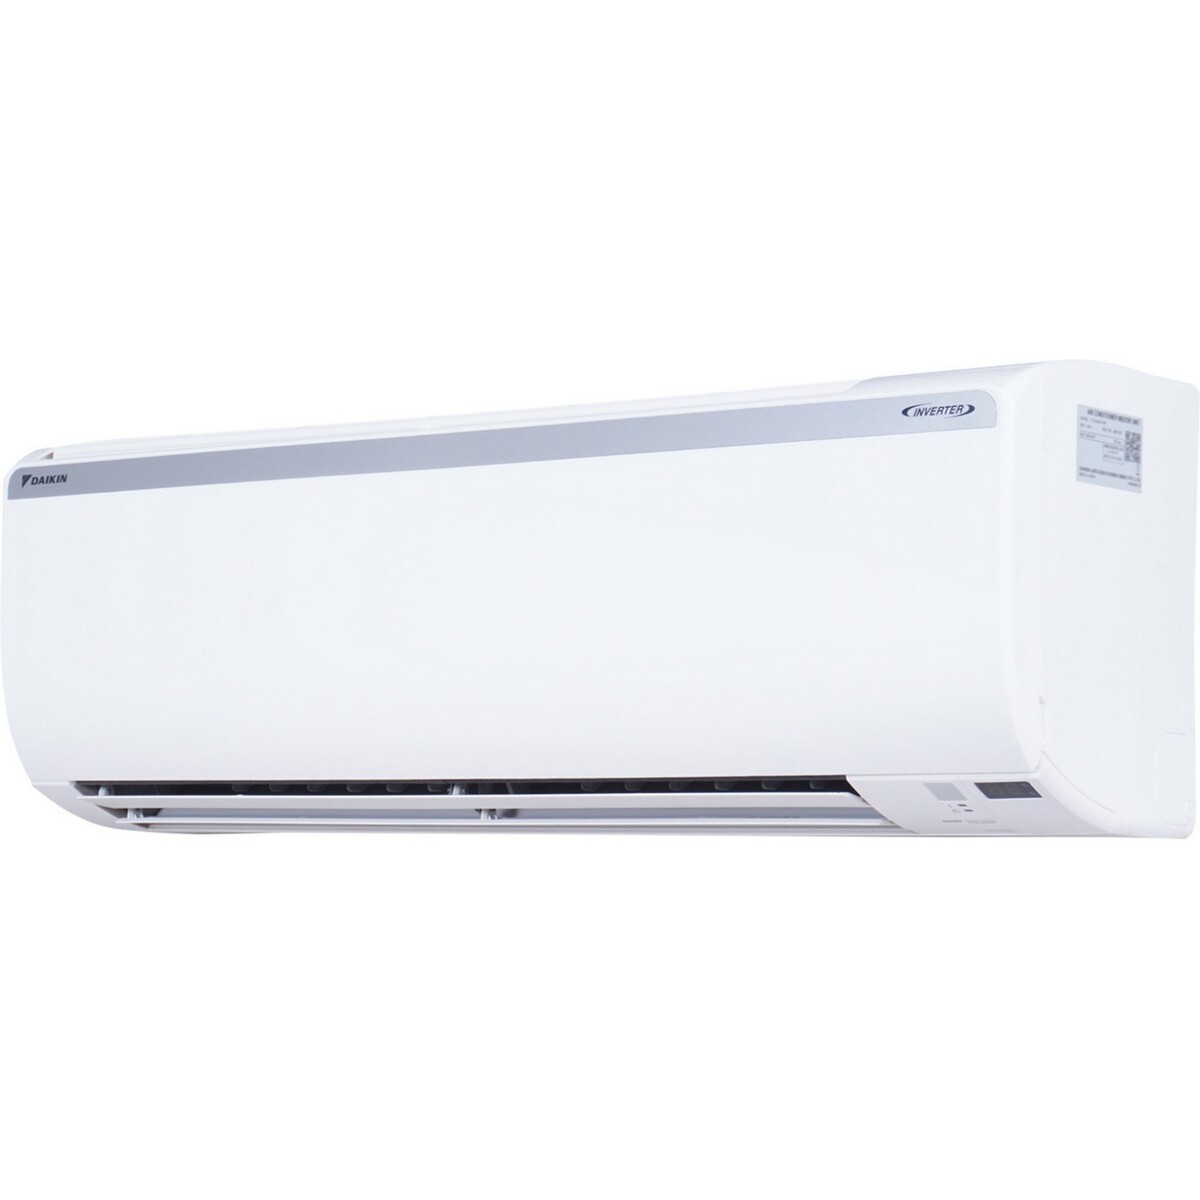 Daikin Inverter Air Conditioner FTKL50UV16 1.5Ton 3*